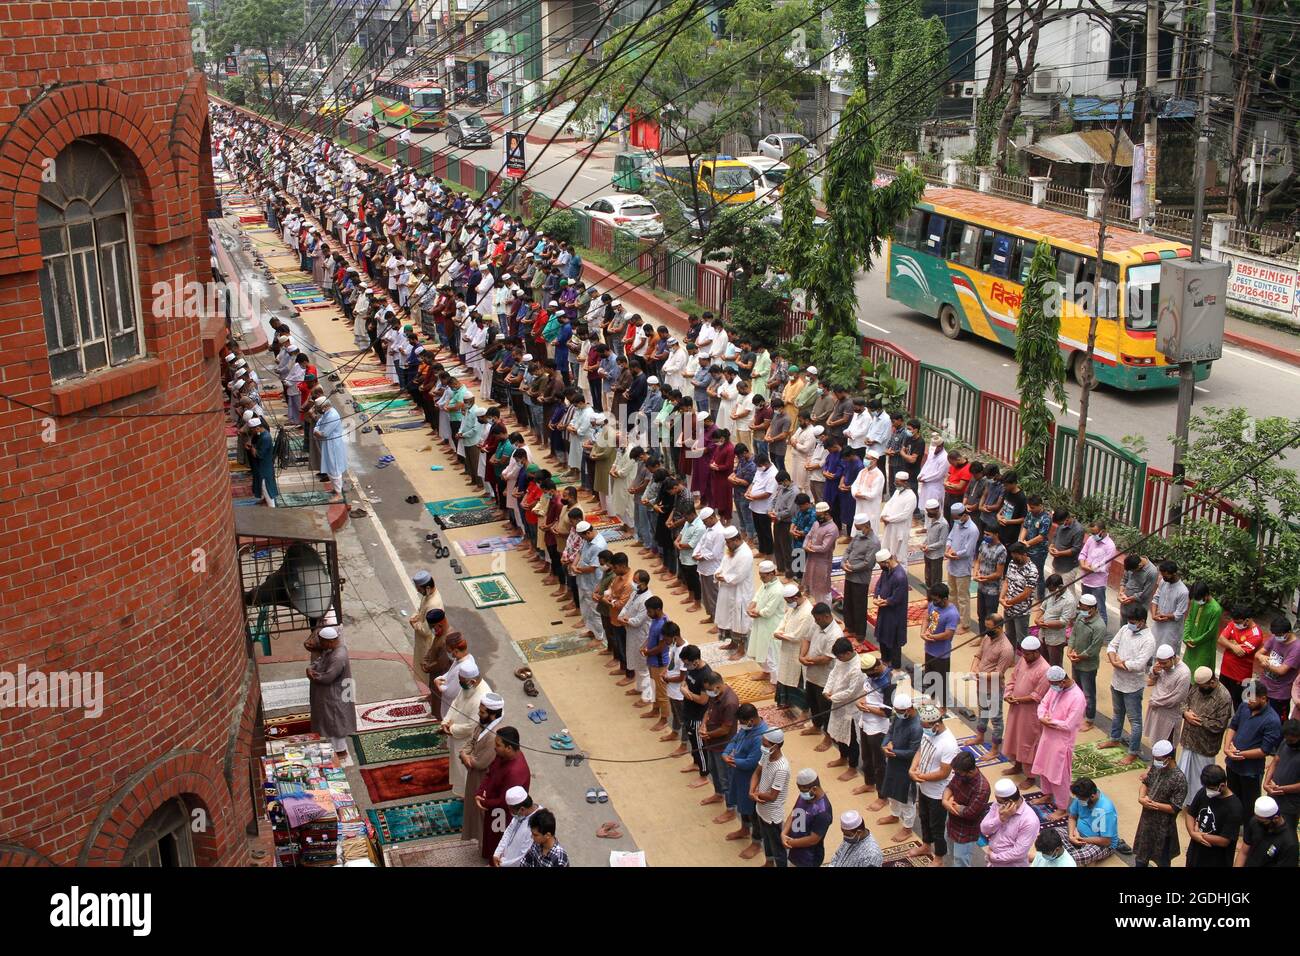 Dhaka, Bangladesch. August 2021. Luftaufnahme von Tausenden von Muslimen, die sich treffen, nehmen an einem Jummah-Massengebet Teil, da dieses islamische Ritual obligatorisch ist, es wird jeden Freitag durchgeführt, um seine Verpflichtungen als Gläubige zu erfüllen. Jummah ist der heiligste Tag der Woche, an dem besondere Gemeindegebete angeboten werden. Der Freitag wird als ein Fest für sich betrachtet, und Muslime achten besonders darauf, saubere Kleidung zu tragen, zu baden und an diesem Tag spezielle Mahlzeiten zuzubereiten. (Foto: Eyepix Group/Pacific Press) Quelle: Pacific Press Media Production Corp./Alamy Live News Stockfoto